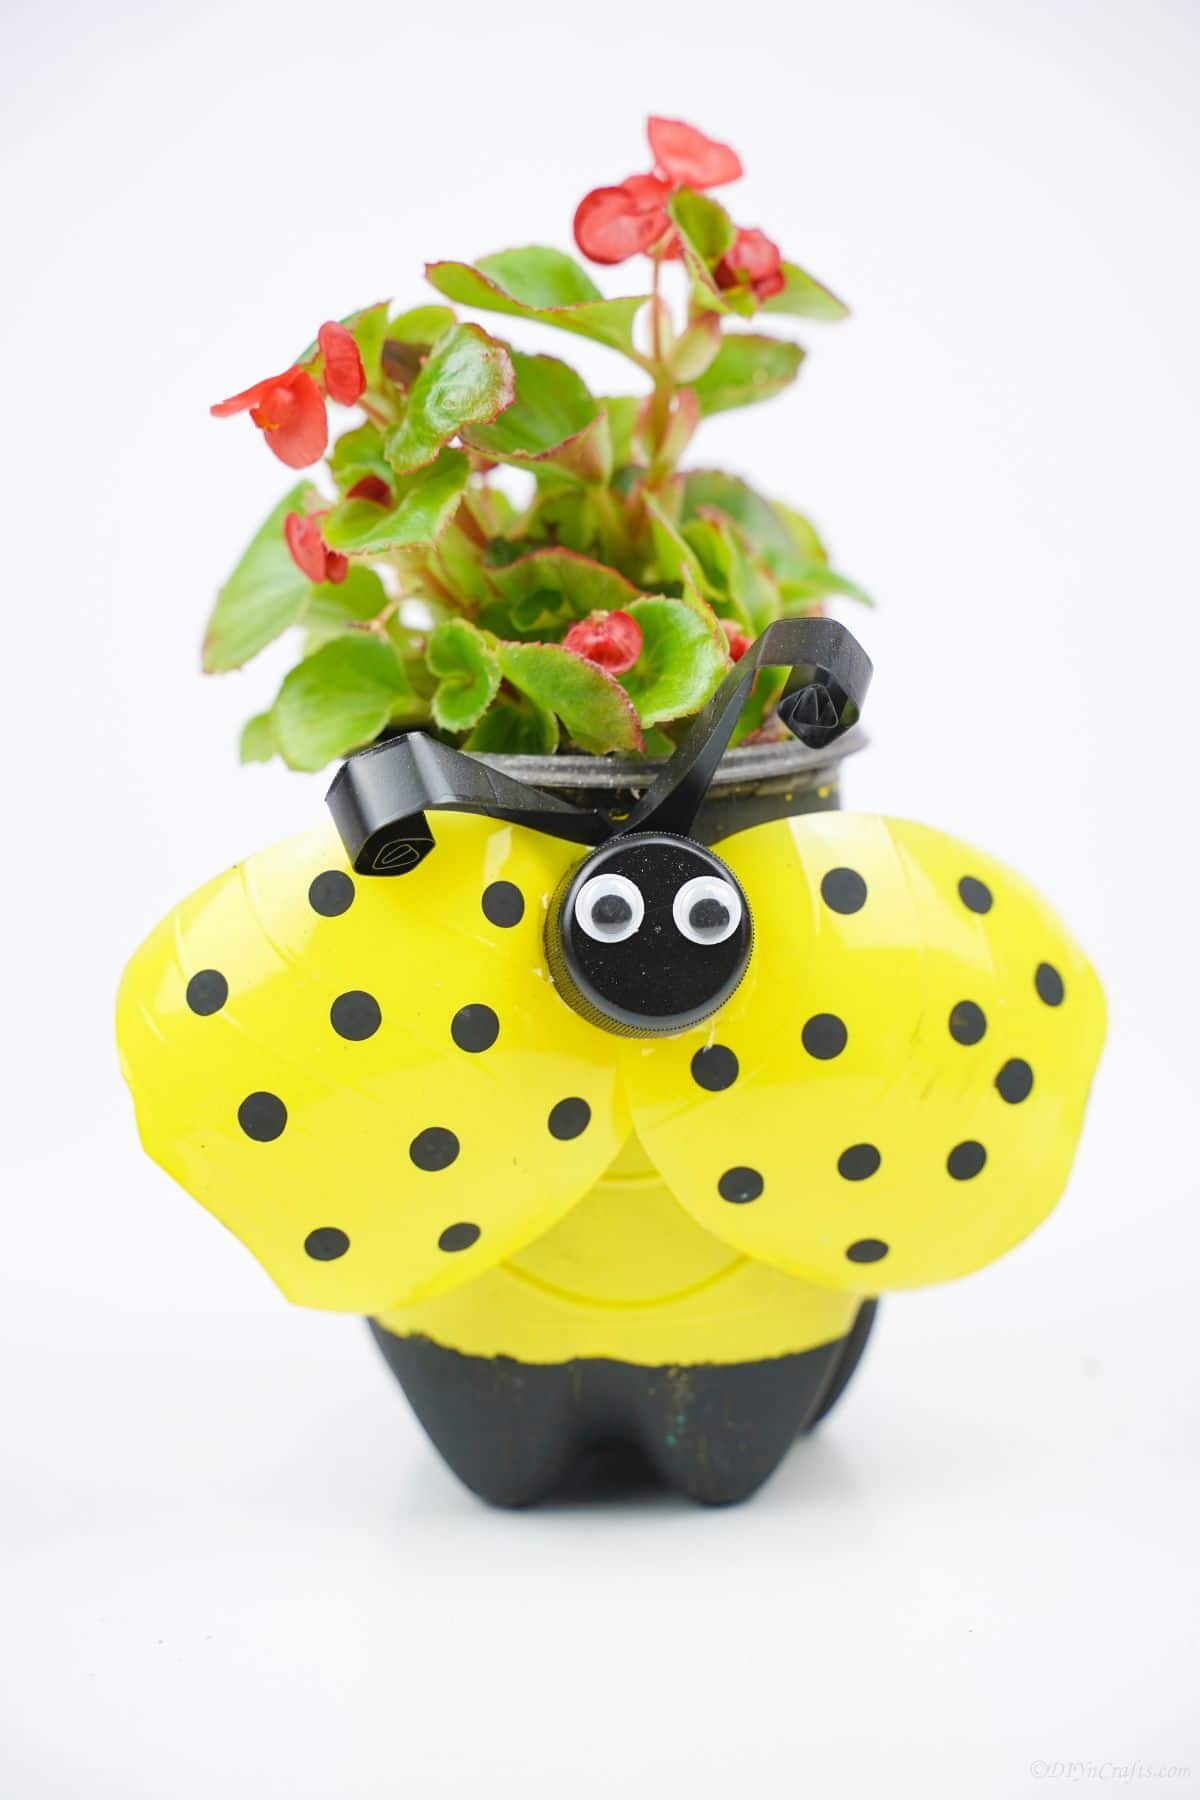 plastic bottle ladybug planter painted yellow